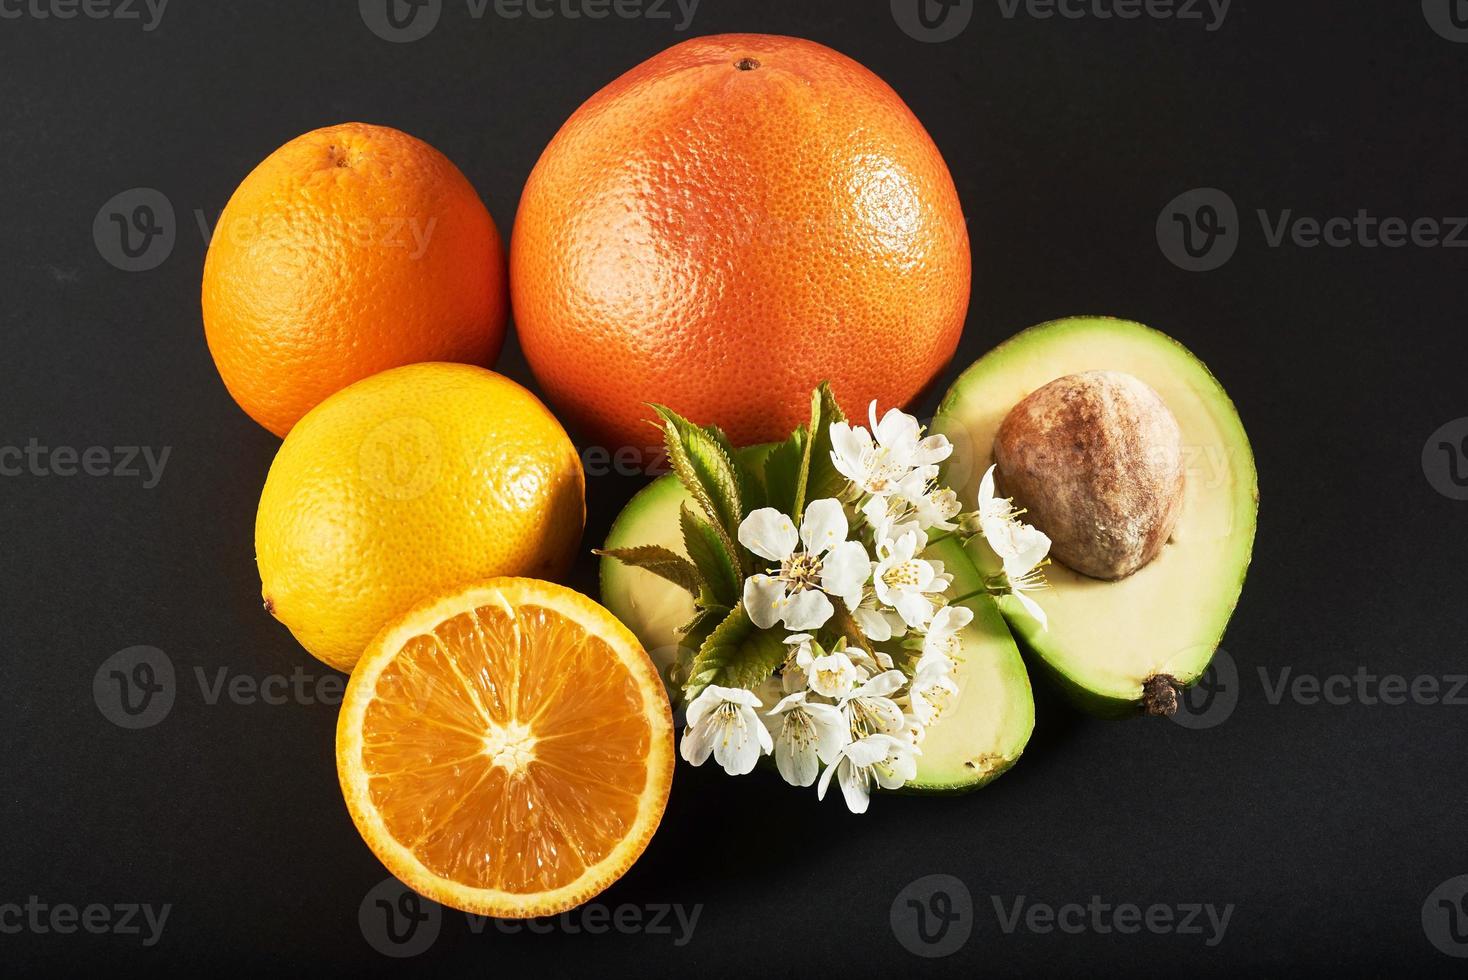 pompelmo, arancia e avocado, isolati su sfondo nero foto